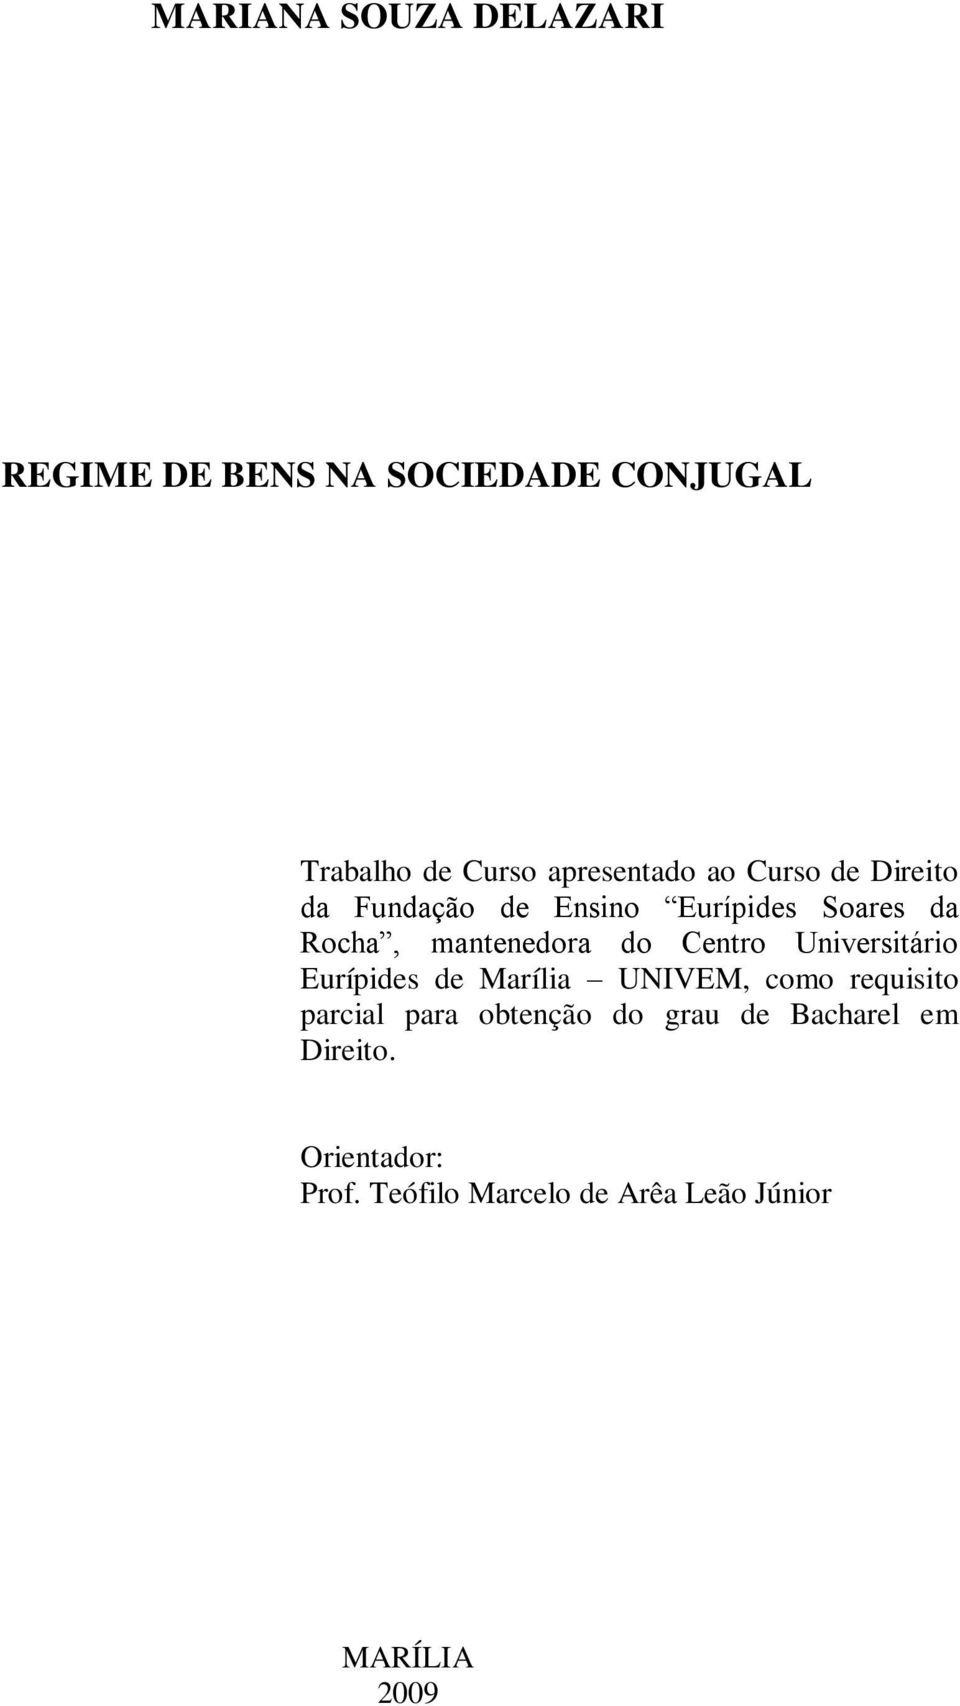 Centro Universitário Eurípides de Marília UNIVEM, como requisito parcial para obtenção do